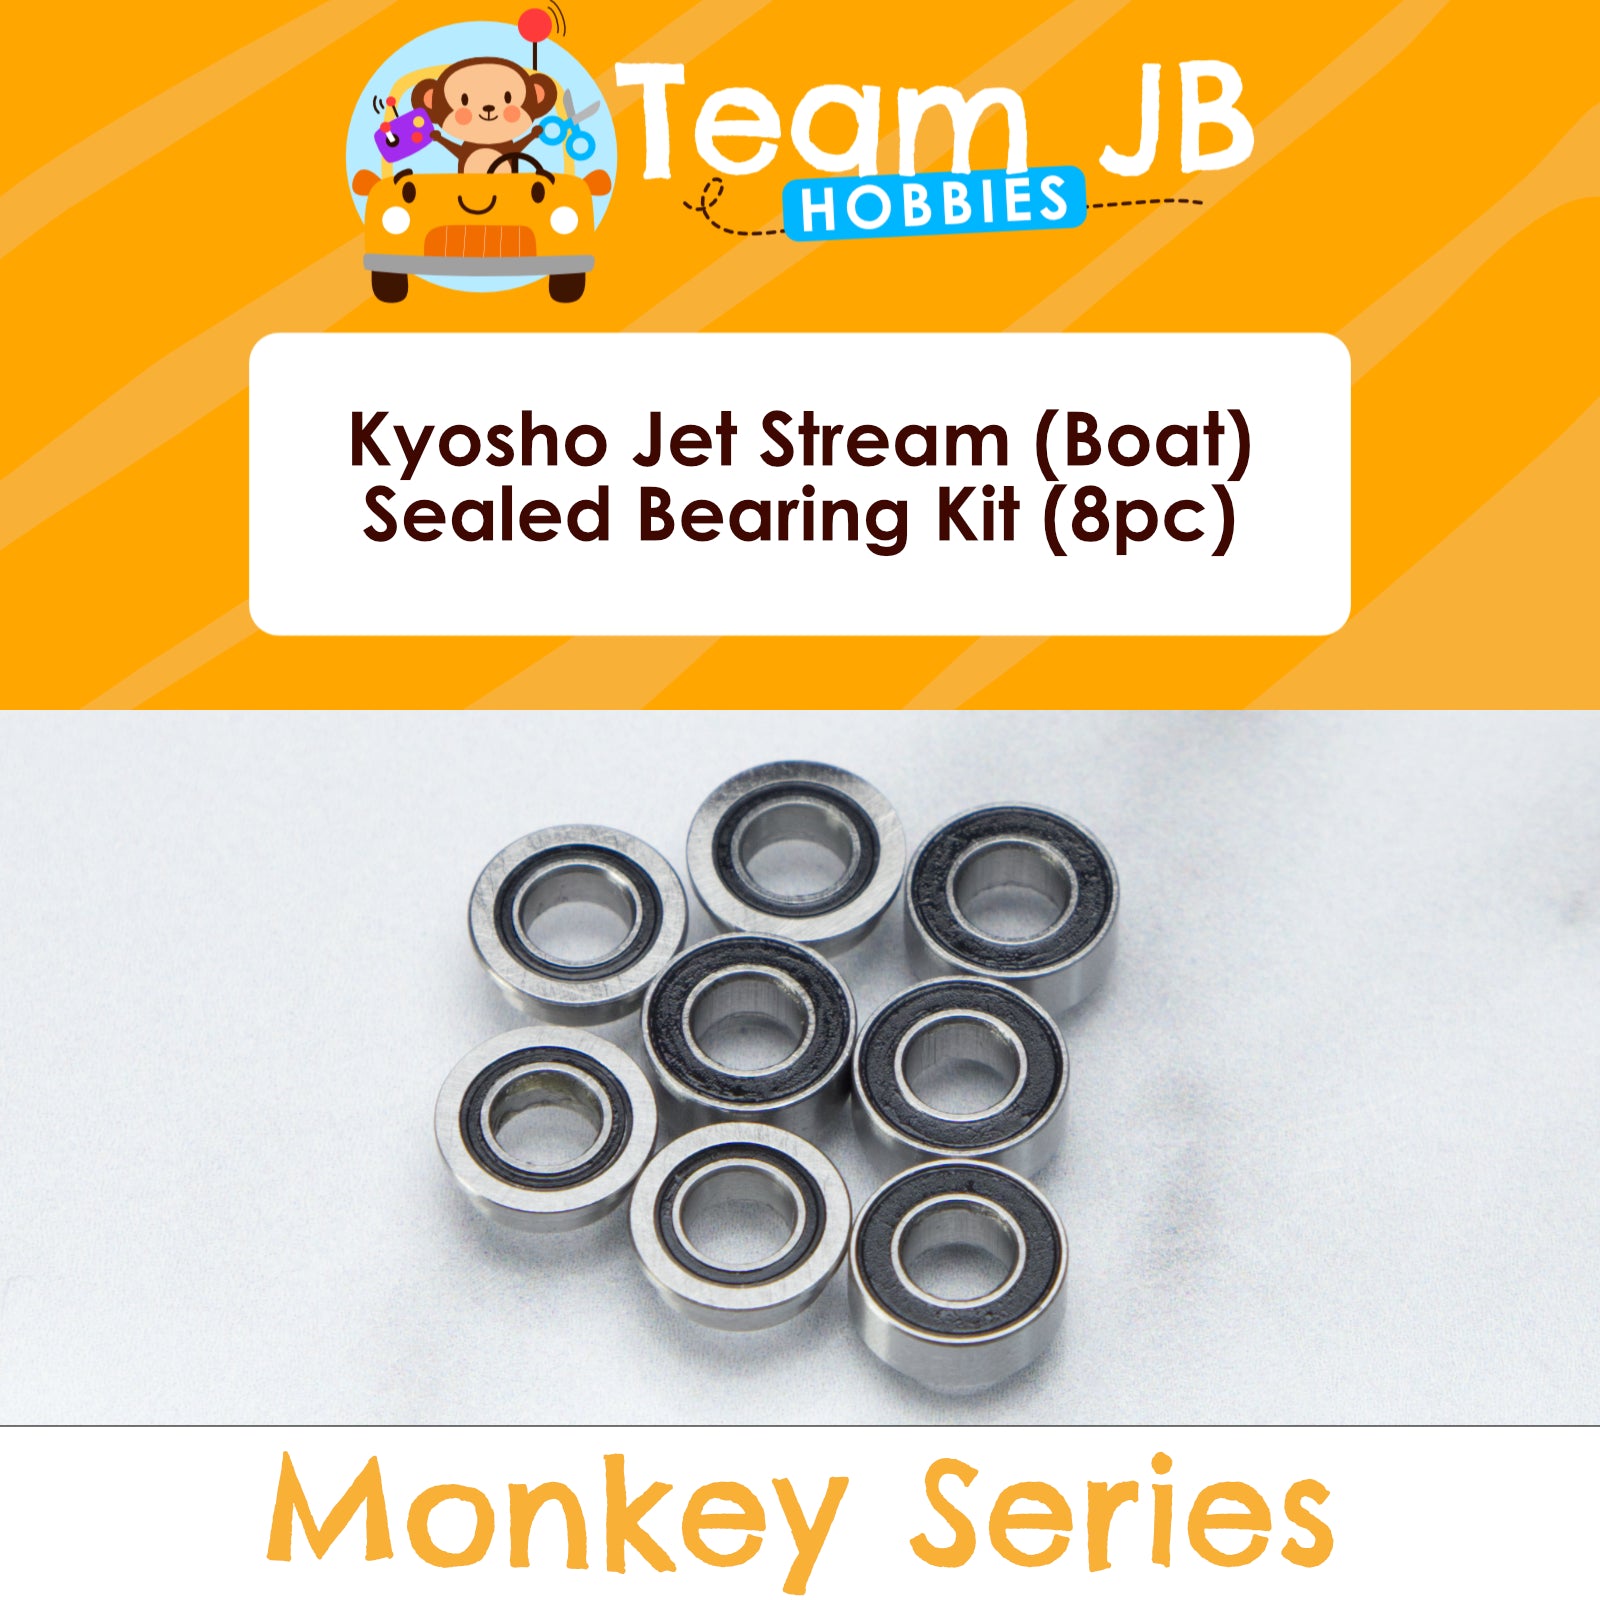 Kyosho Jet Stream (Boat) - Sealed Bearing Kit